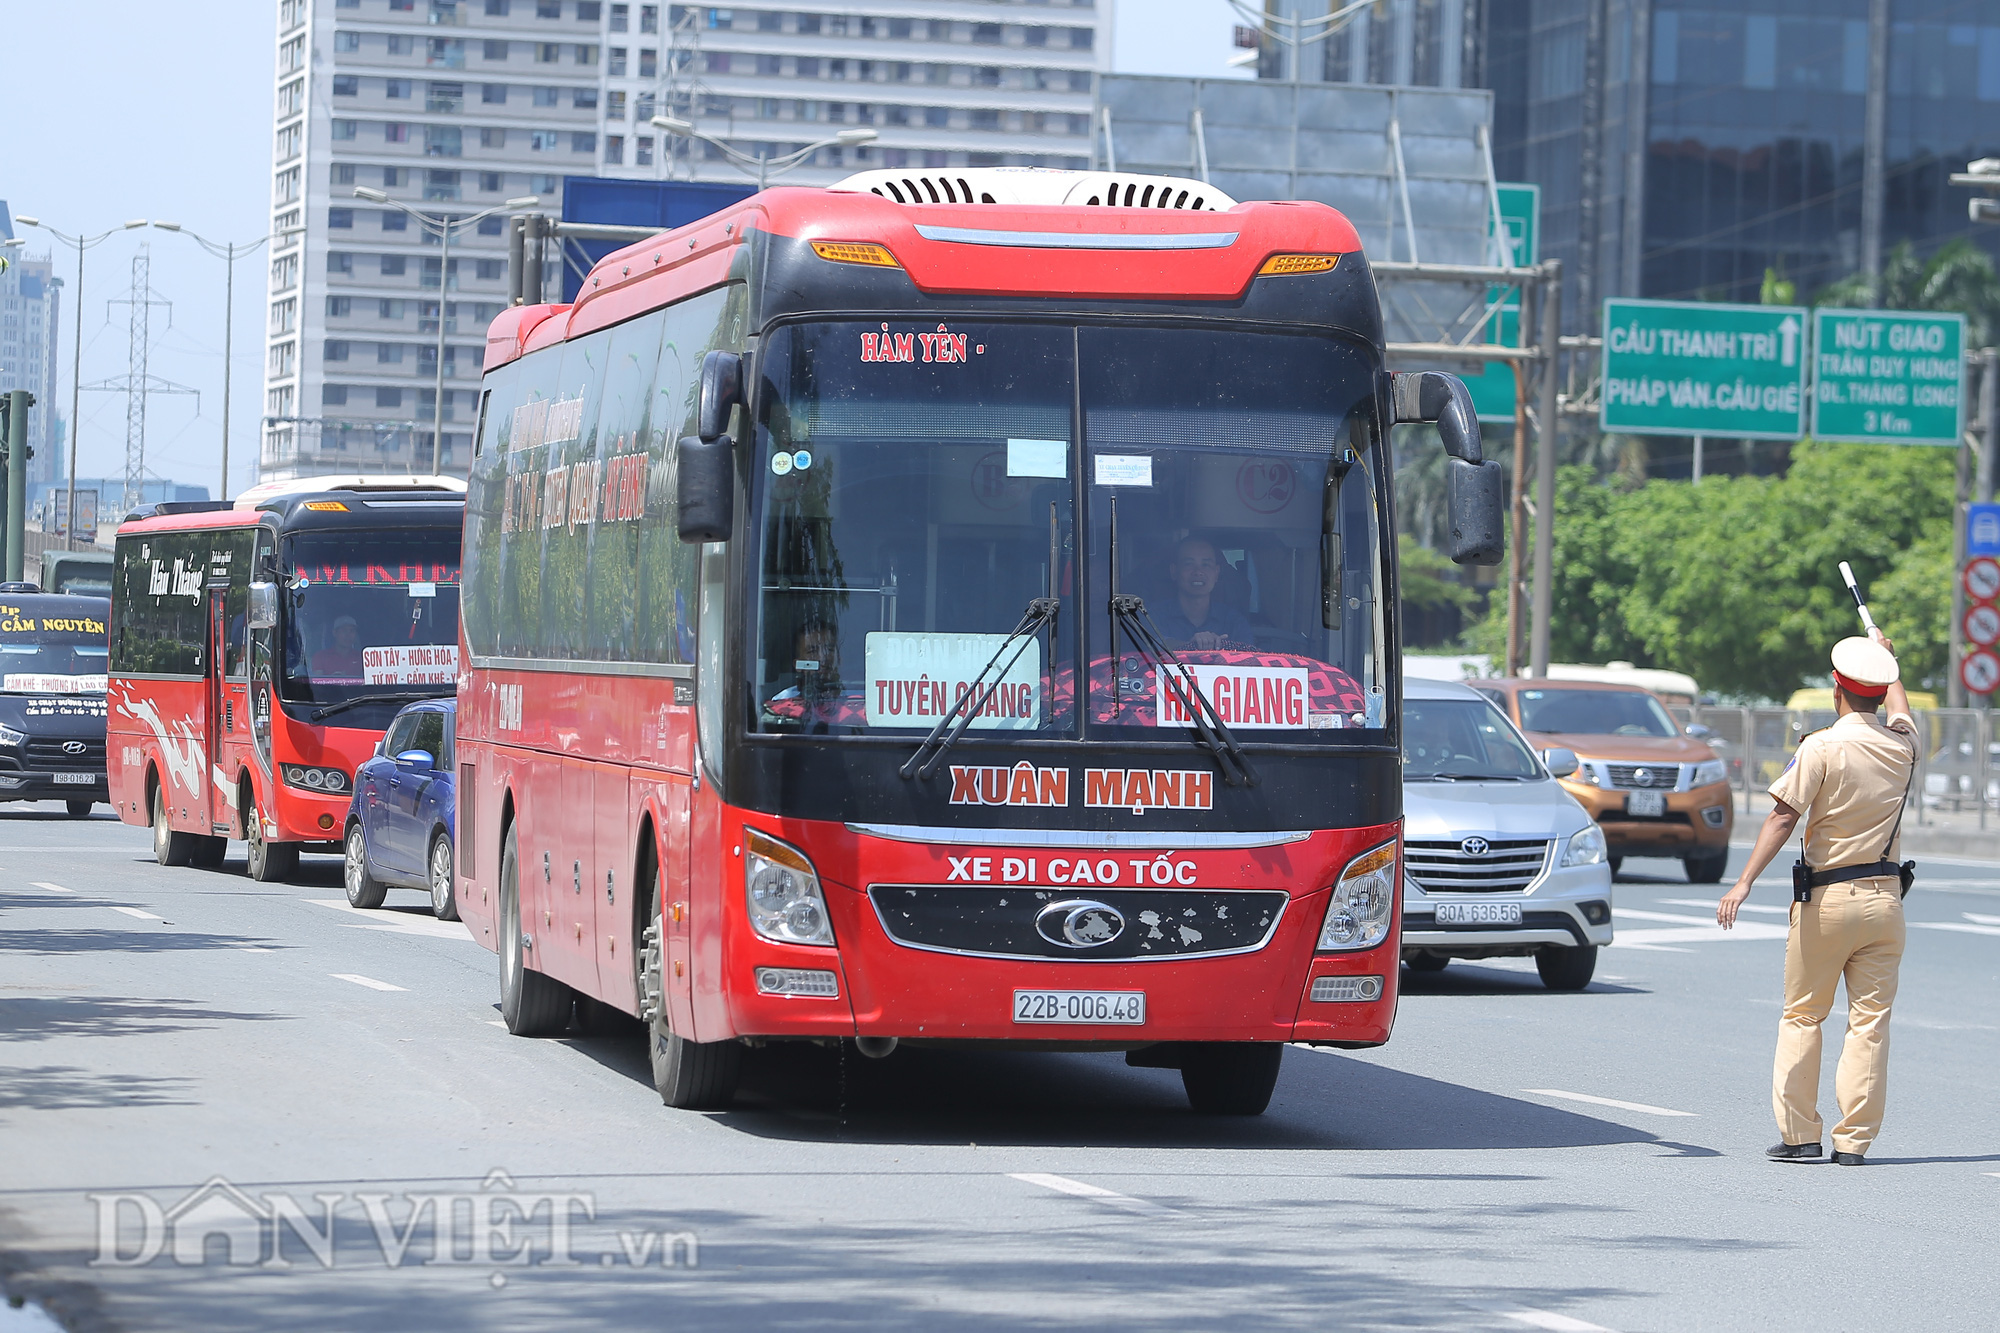 Hàng loạt xe chạy &quot;rùa bò&quot;, bắt khách dọc đường bị CSGT Hà Nội xử lý - Ảnh 1.